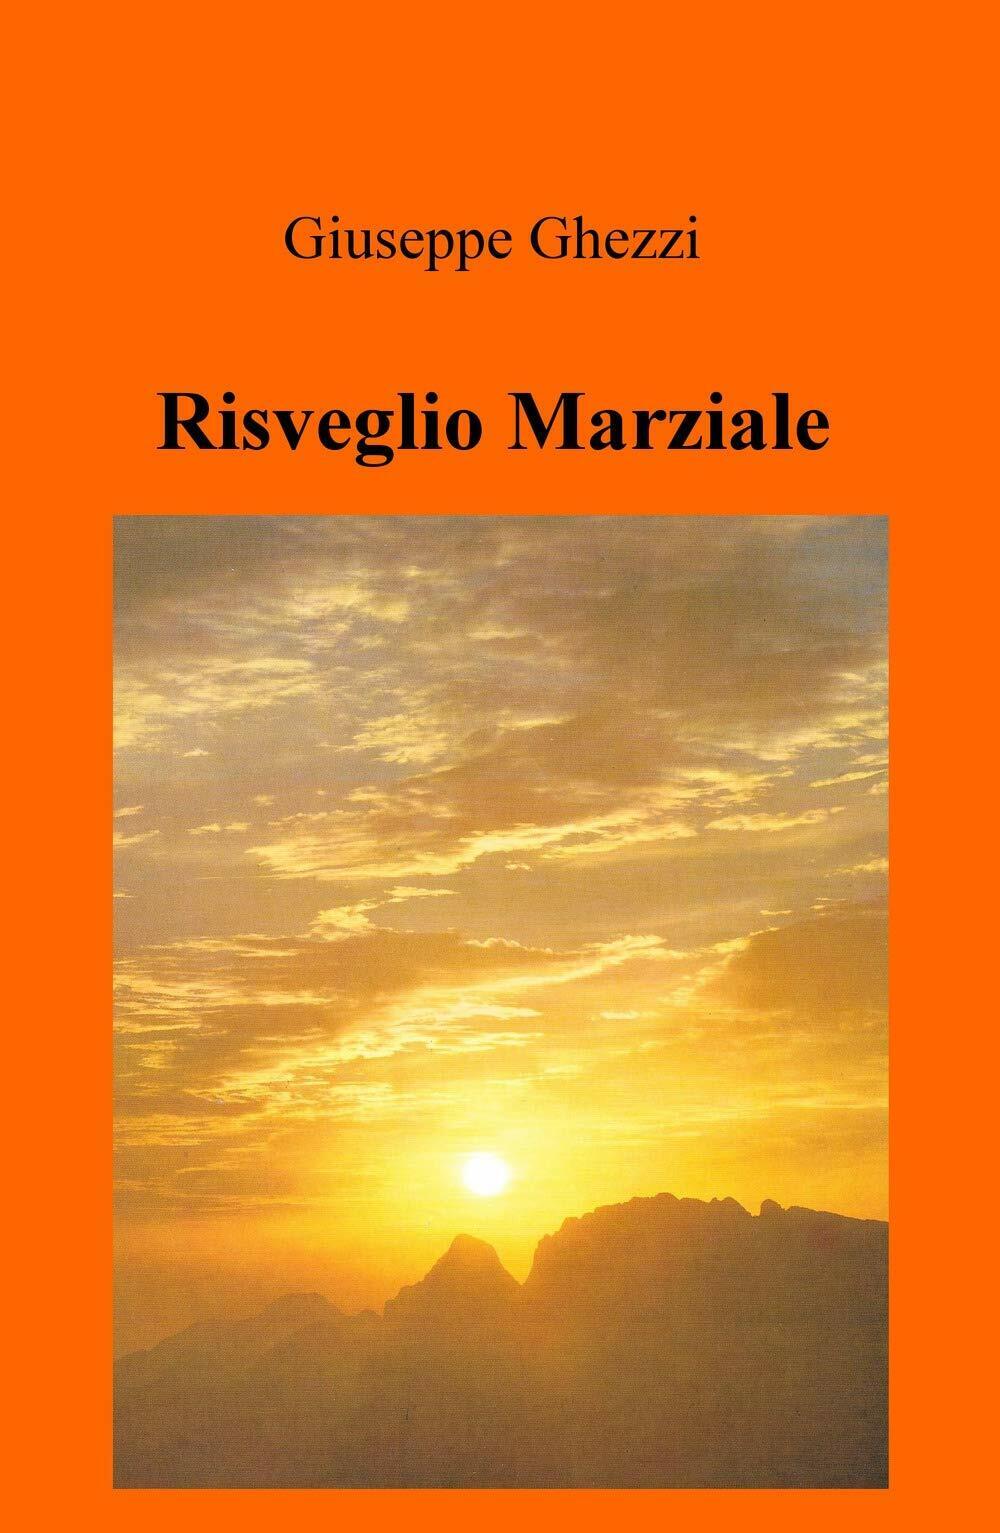 Risveglio Marziale - Giuseppe Ghezzi - ilmiolibro, 2019